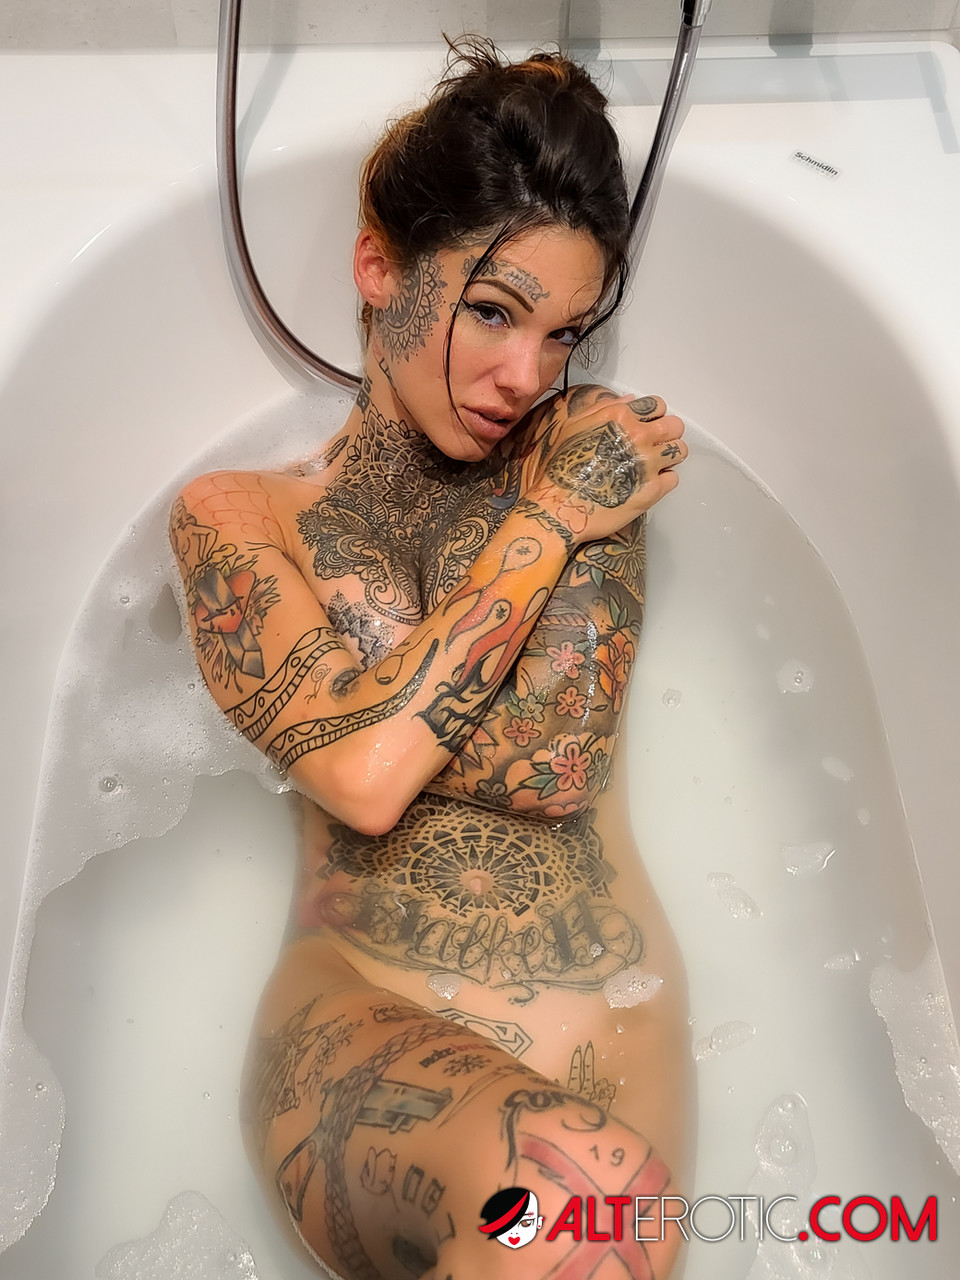 Tattooed girl Lucy Zzz takes a bath after POV sex in a bathtub 포르노 사진 #422562628 | Alt Erotic Pics, Lucy Zzz, Tattoo, 모바일 포르노